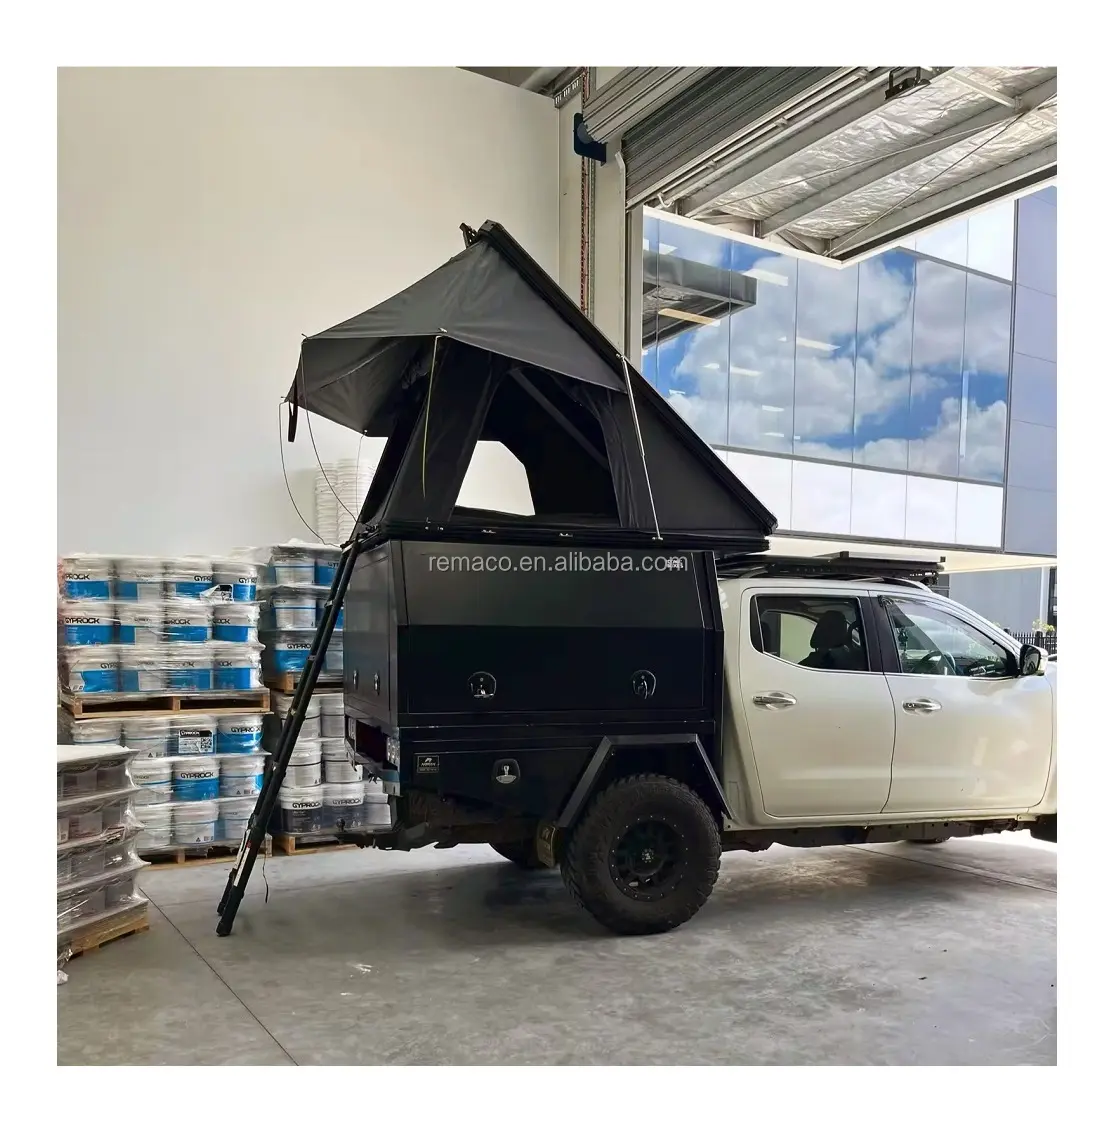 Remaco Outdoor Camping wasserdichtes 4-Personen-SUV-Dachzelt Aluminiumlegierung Dreieck Hartschalen-Dachzelt